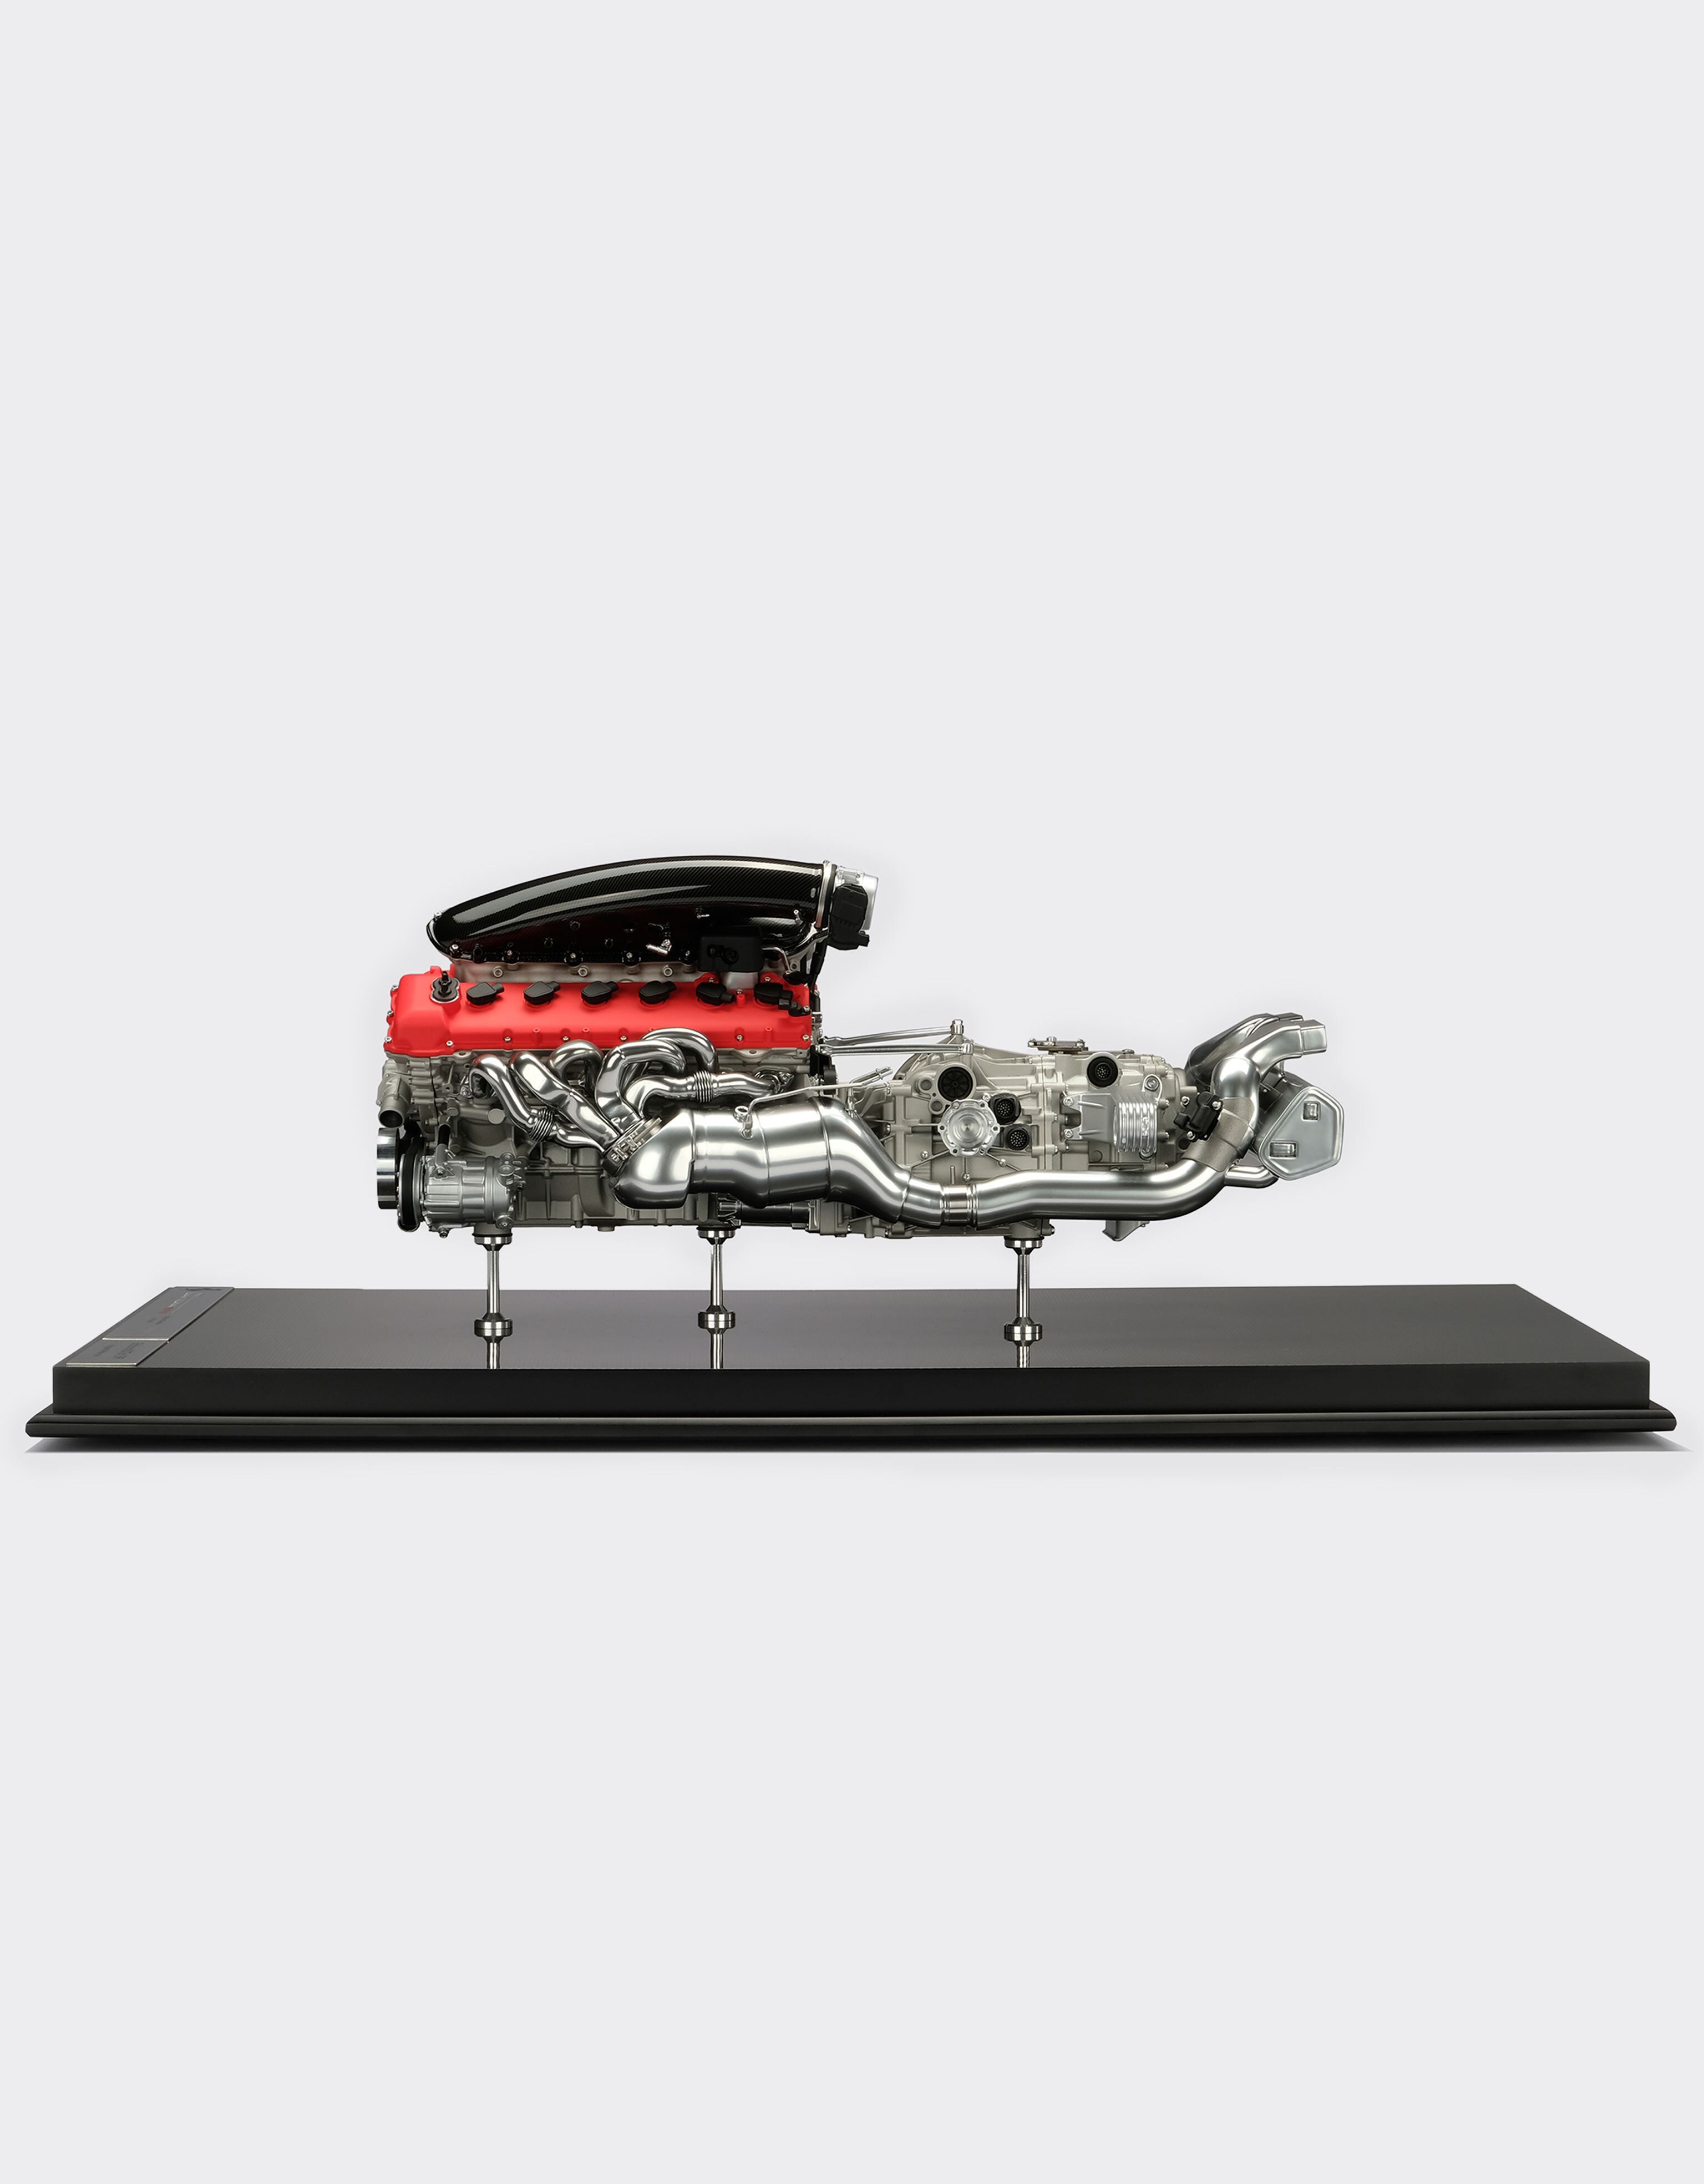 Ferrari Ferrari Daytona SP3 engine model in 1:4 scale Red L7588f